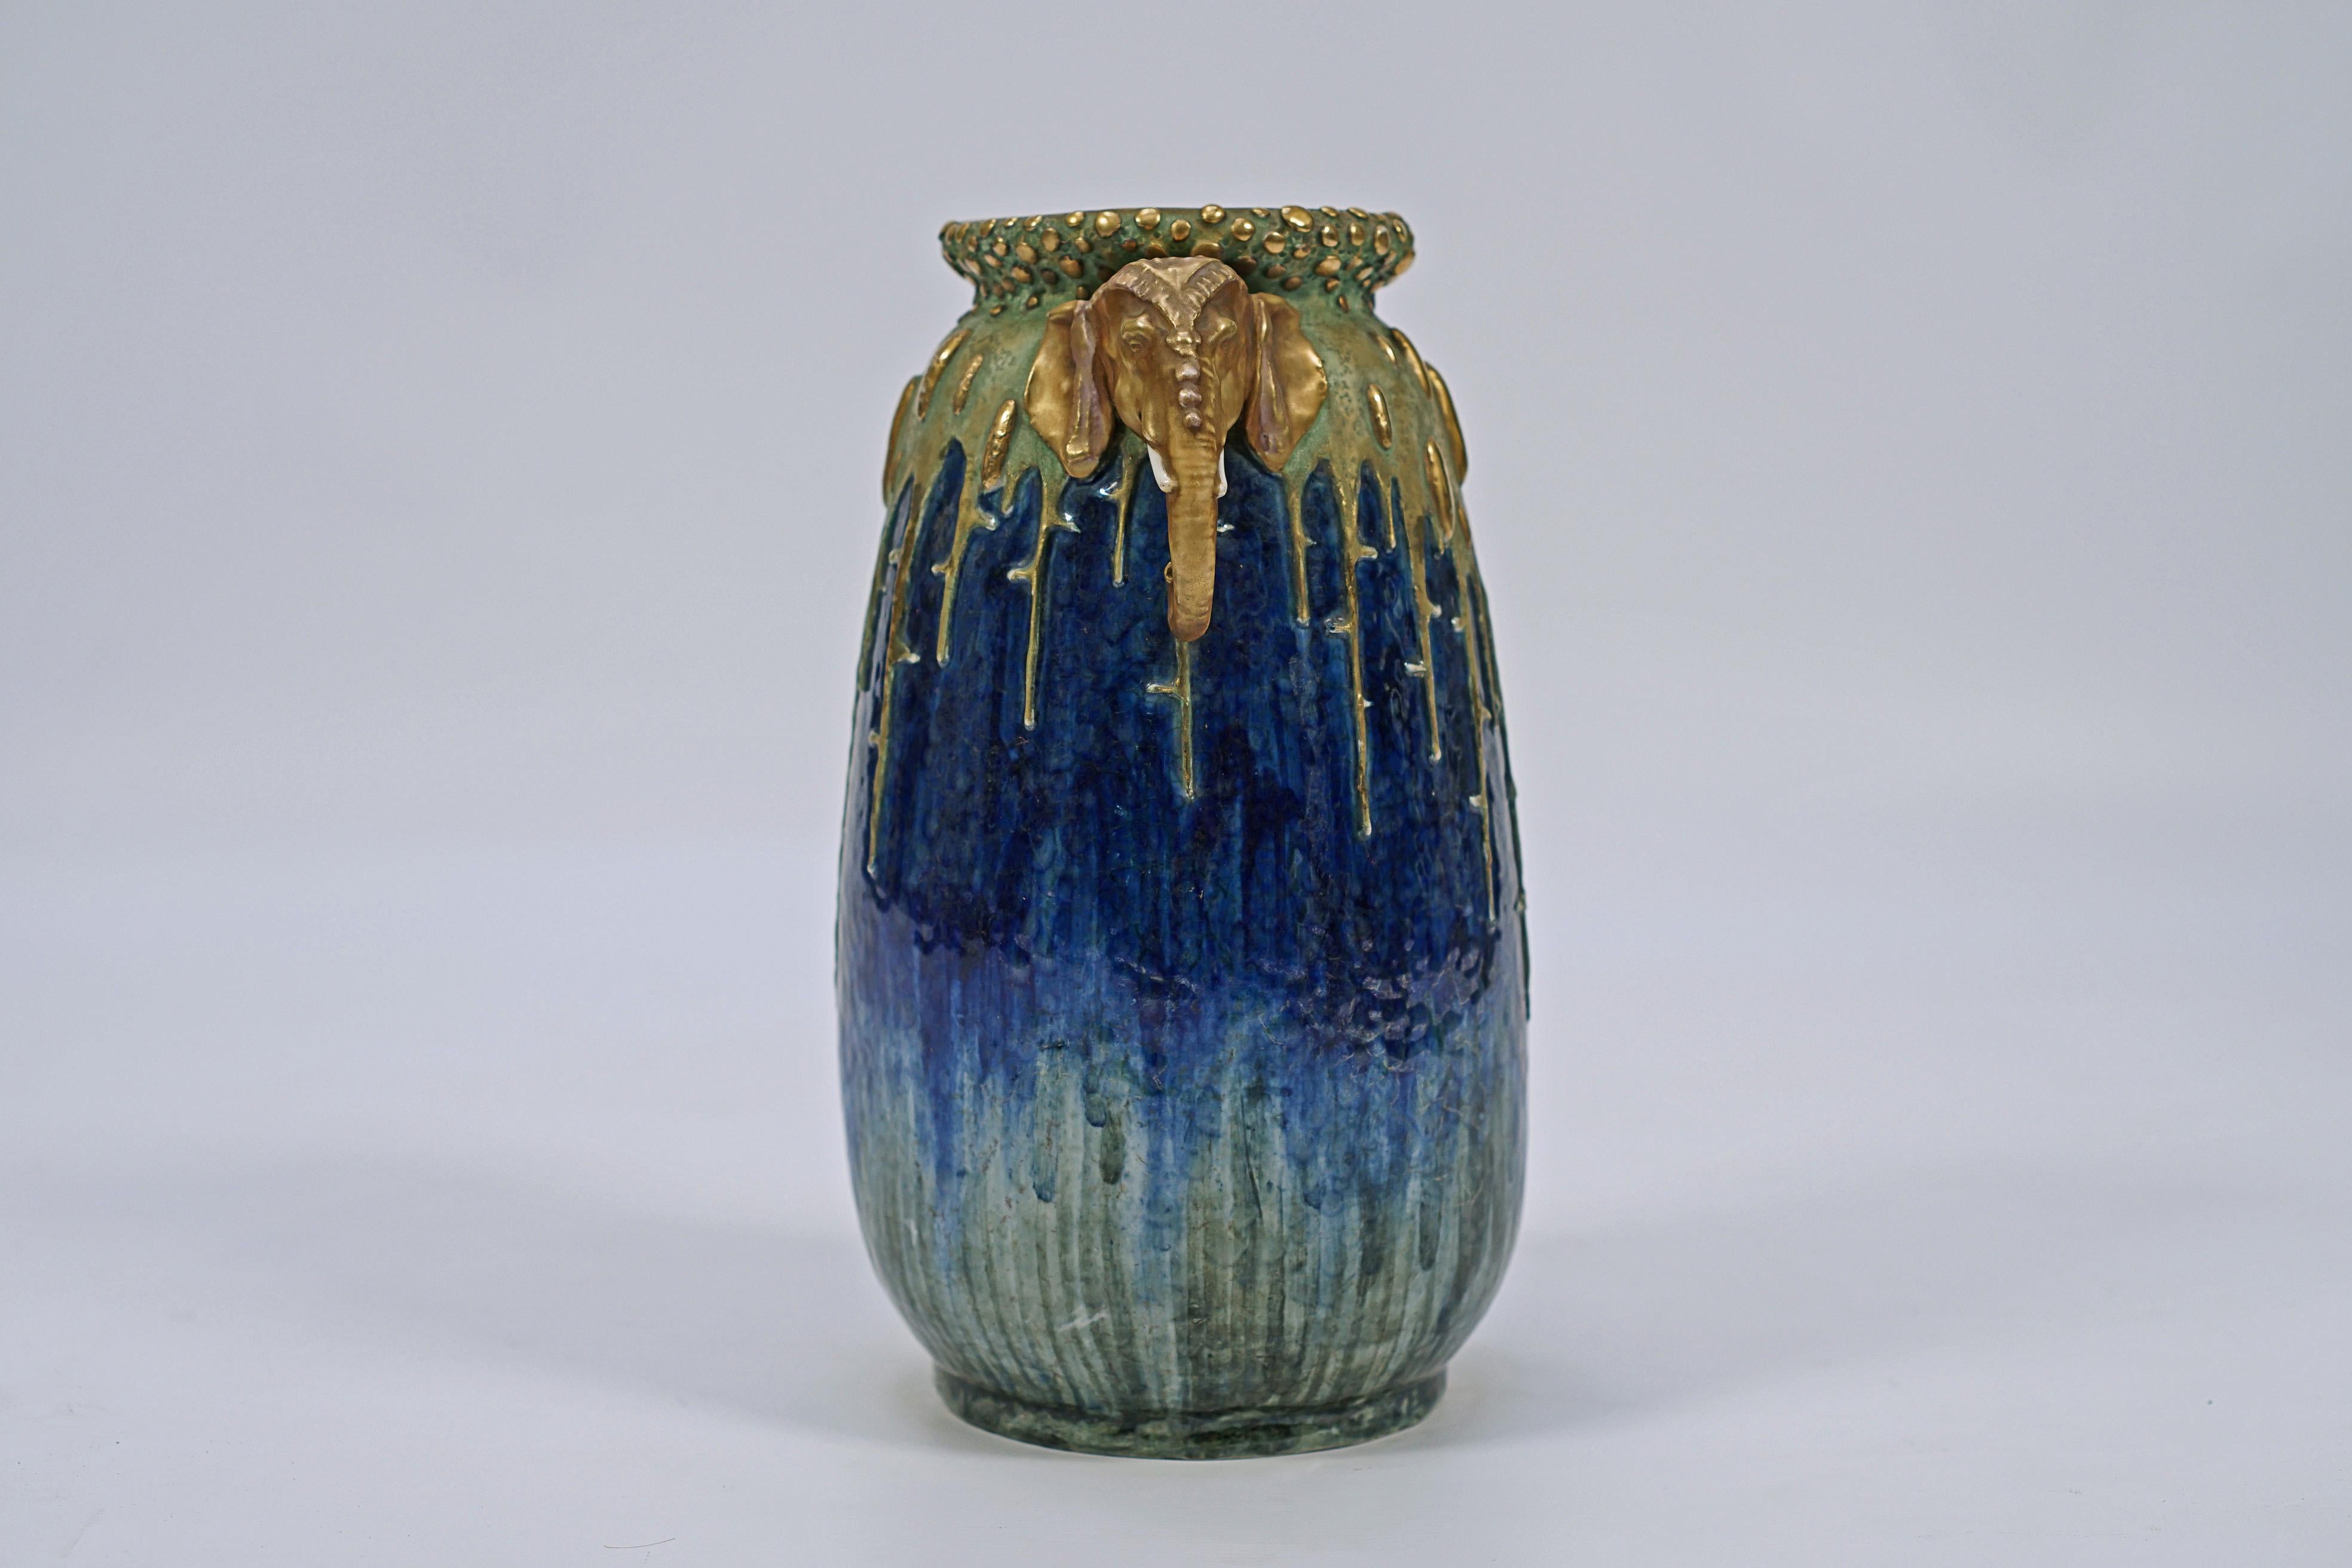 Vase Art nouveau en porcelaine émaillée bleue et verte, avec des détails dorés et des anses à motif de tête d'éléphant, fabriqué par AMPHORA. Sceau de la couronne signé, AMPHORA, Autriche, n° 2191, n° 56.

Autriche, vers 1900.